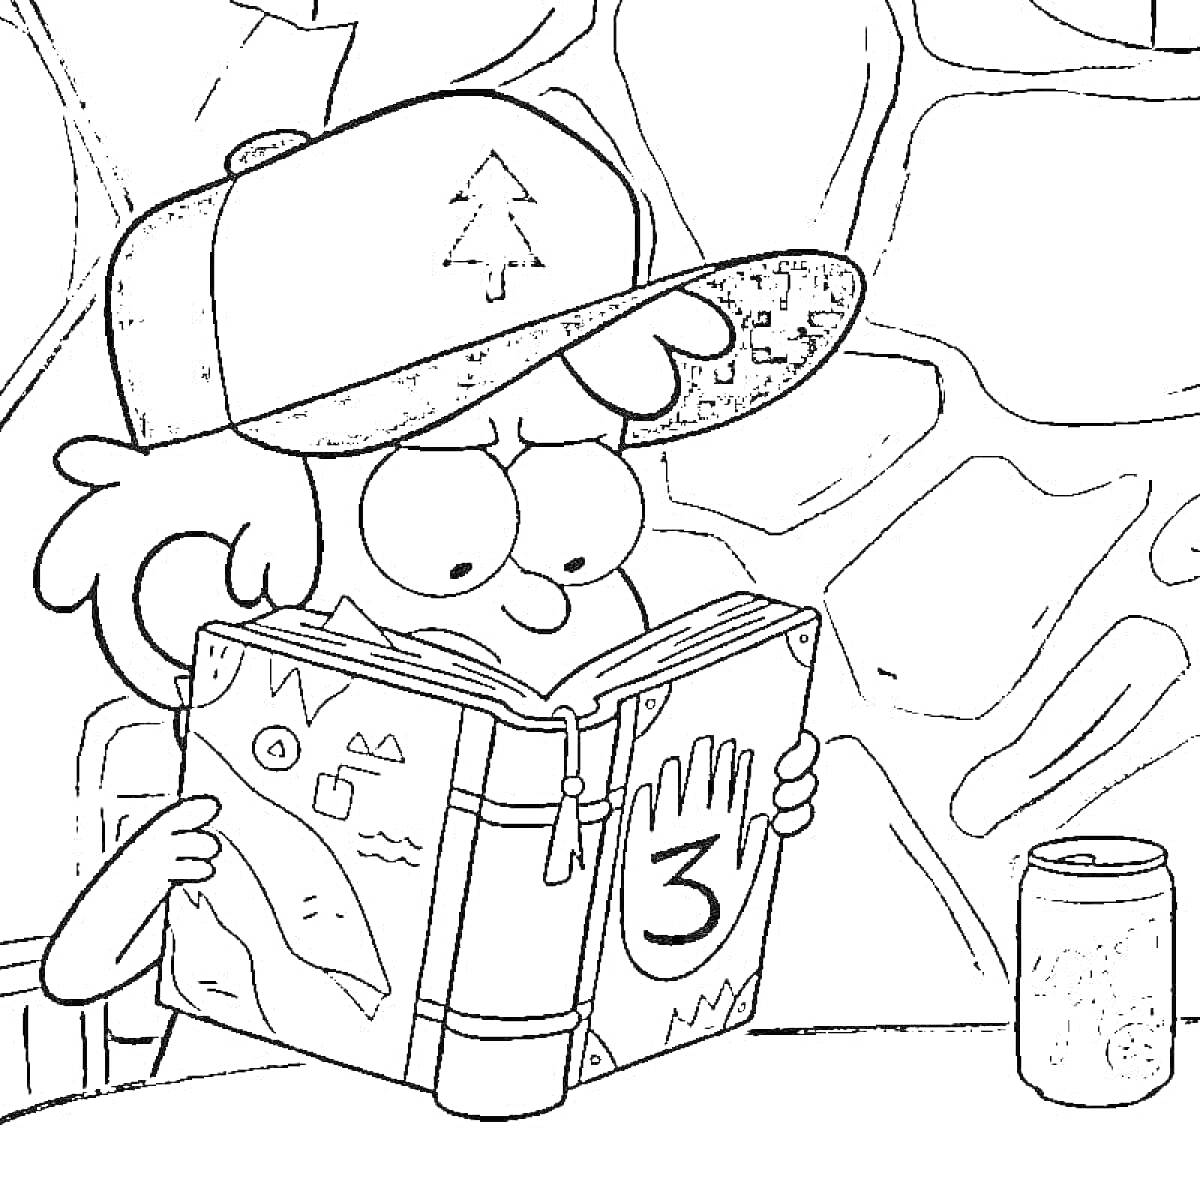 Раскраска мальчик в кепке с деревом читает книгу с цифрой 3 на обложке, фон - стена из камня, на столе банка